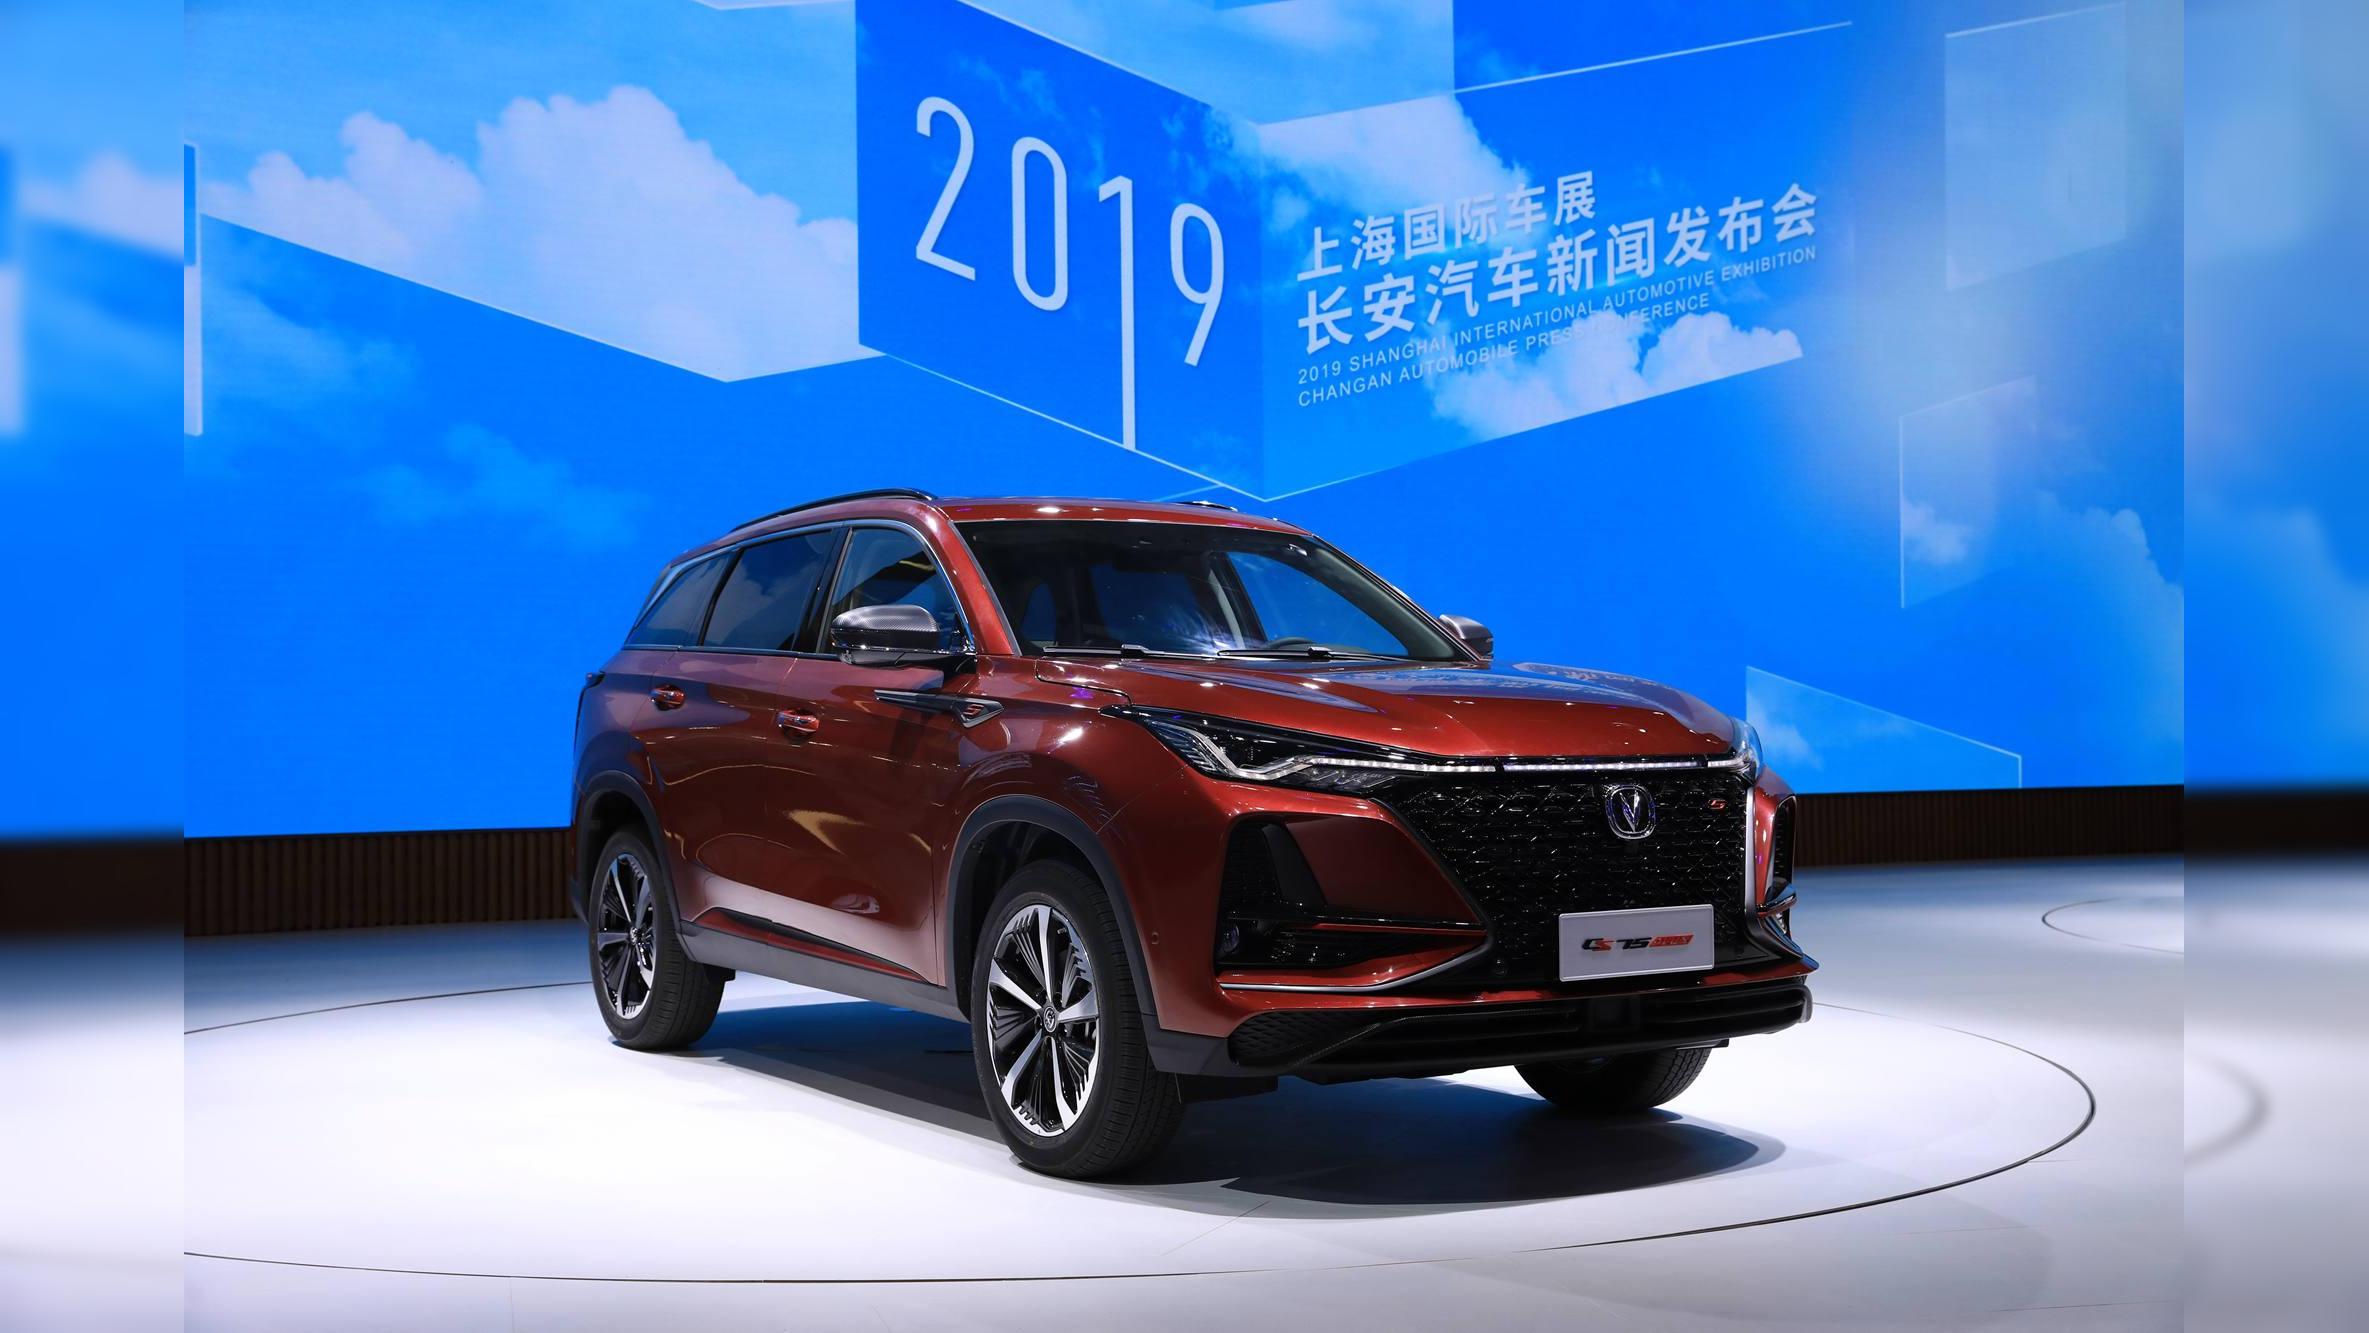 2019上海车展:全球首发,长安cs75 plus正式亮相